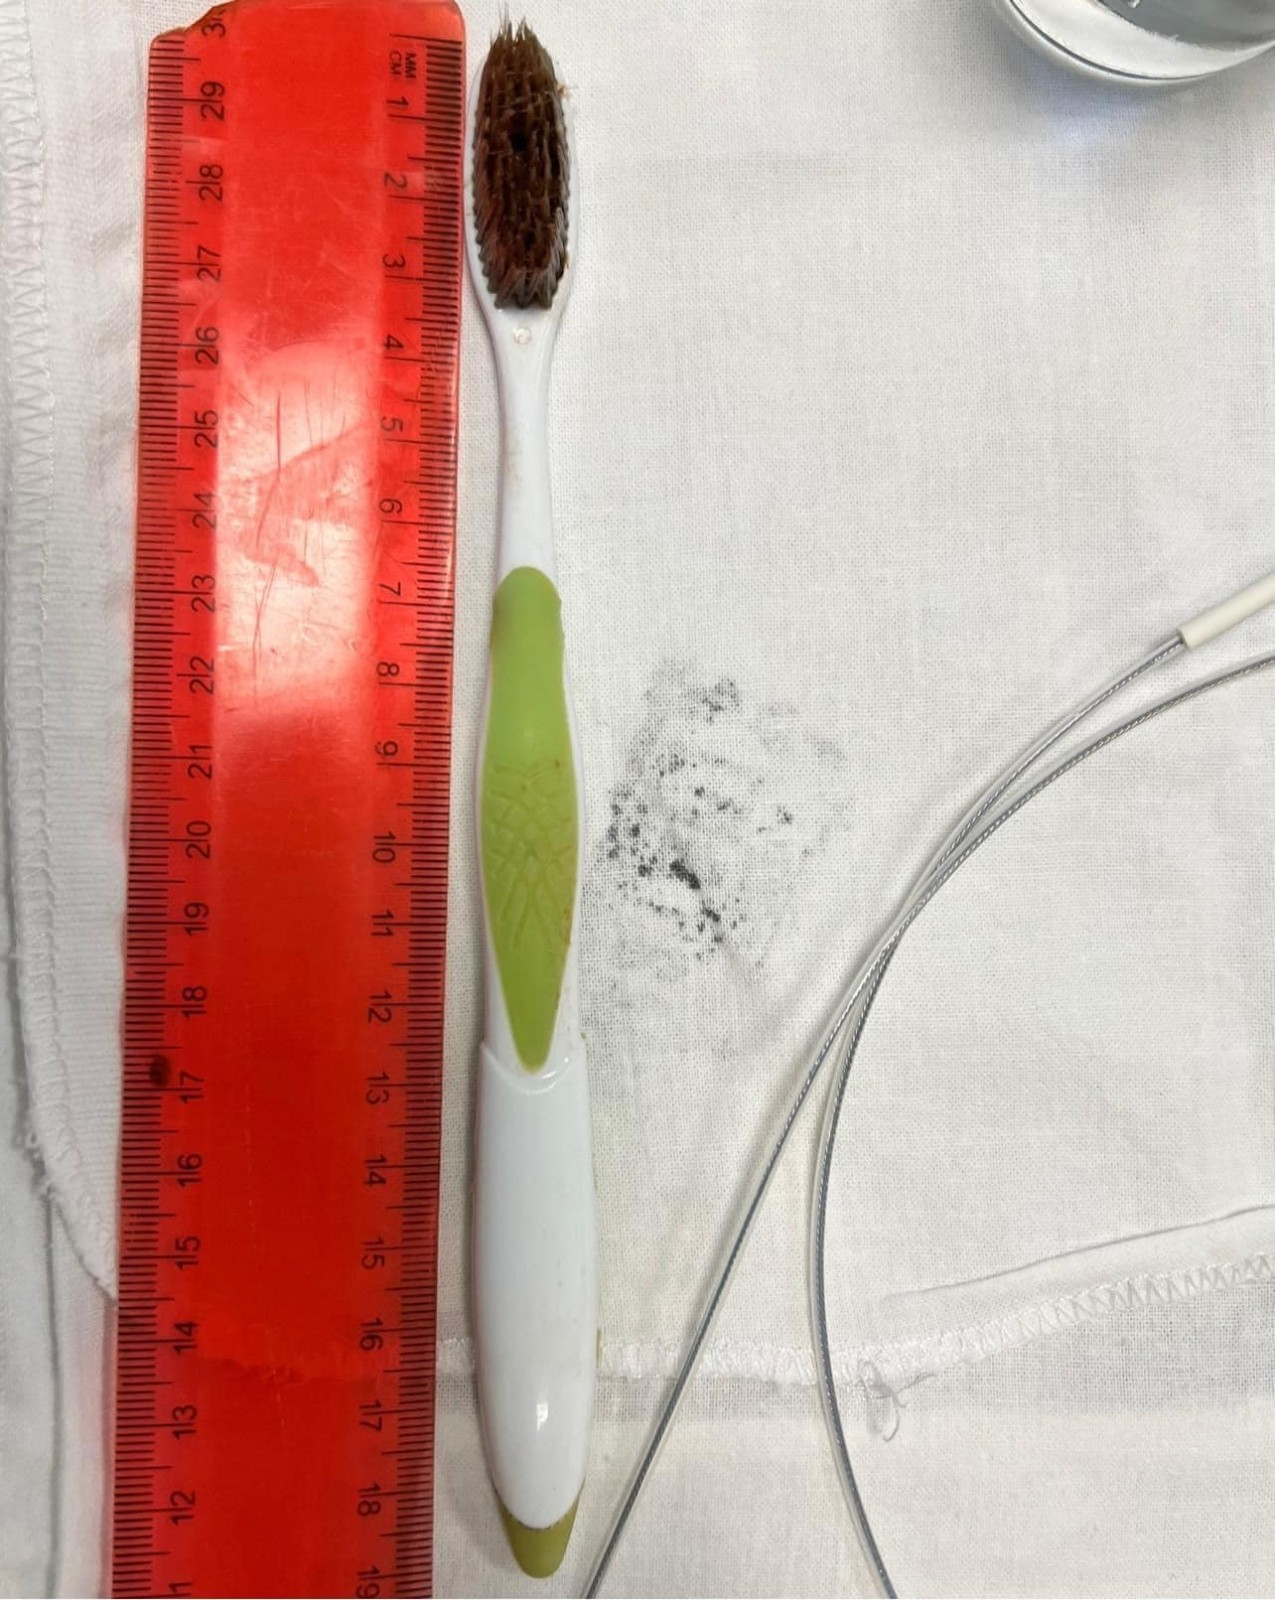 Лікарі Охматдиту витягли зі стравоходу підлітка 19-сантиметрову зубну щітку